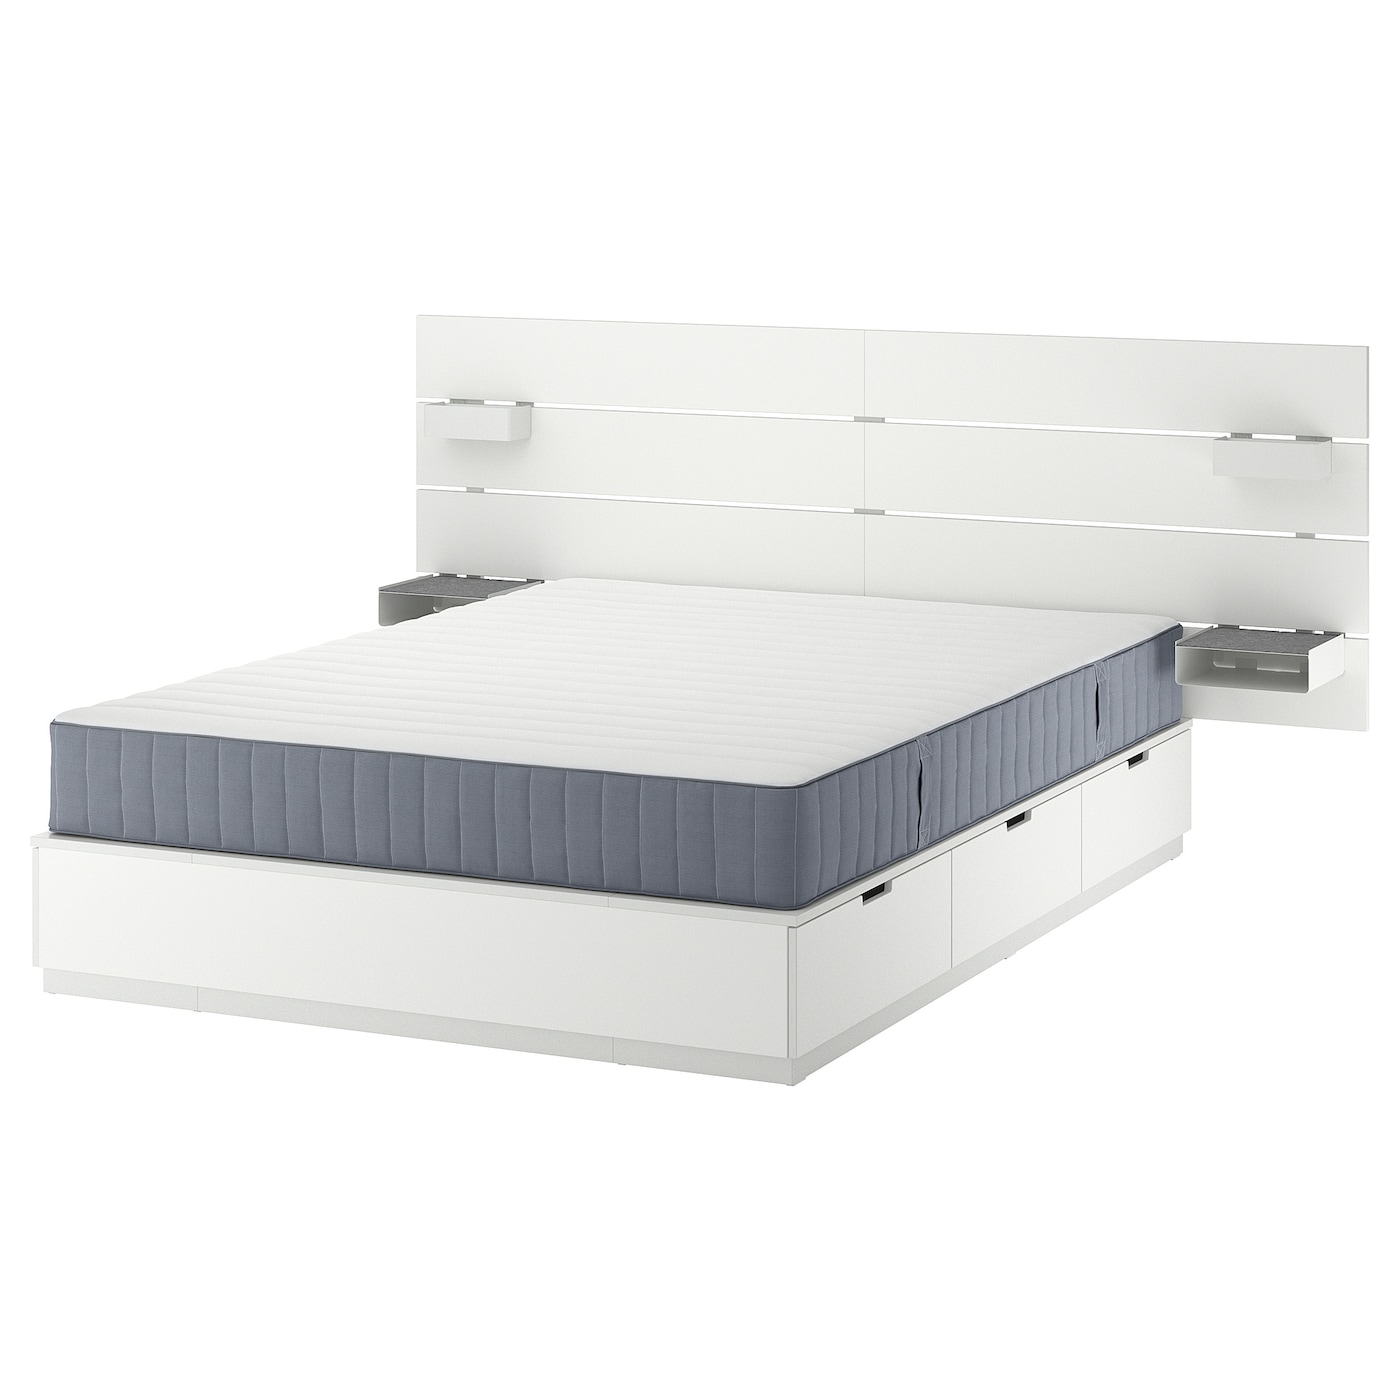 Каркас кровати с контейнером и матрасом - IKEA NORDLI, 140х200 см, матрас средней жесткости, белый, НОРДЛИ ИКЕА